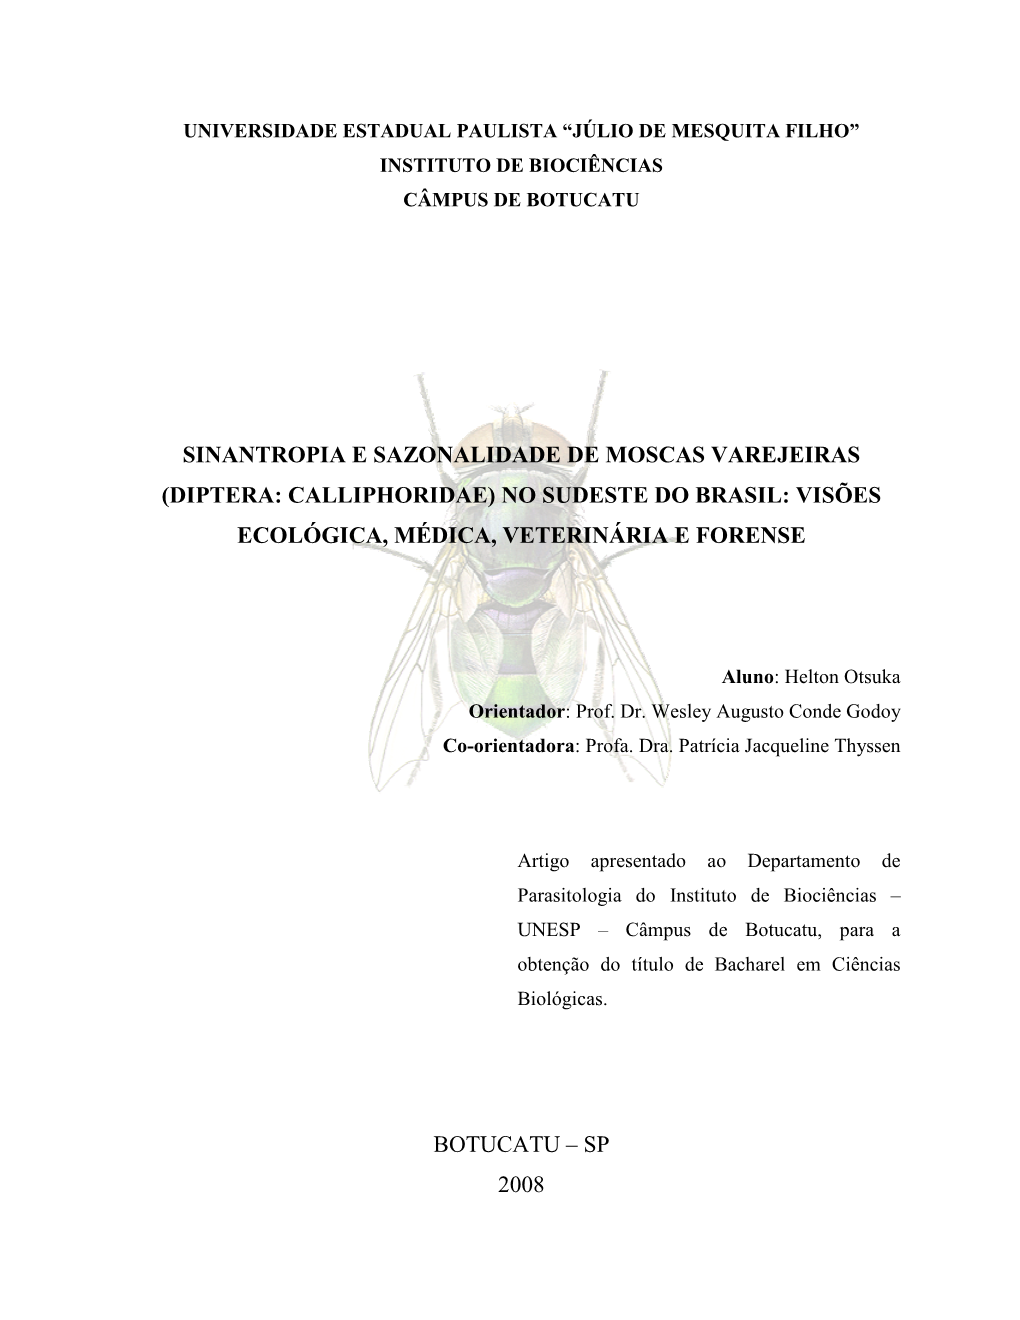 (Diptera: Calliphoridae) No Sudeste Do Brasil: Visões Ecológica, Médica, Veterinária E Forense